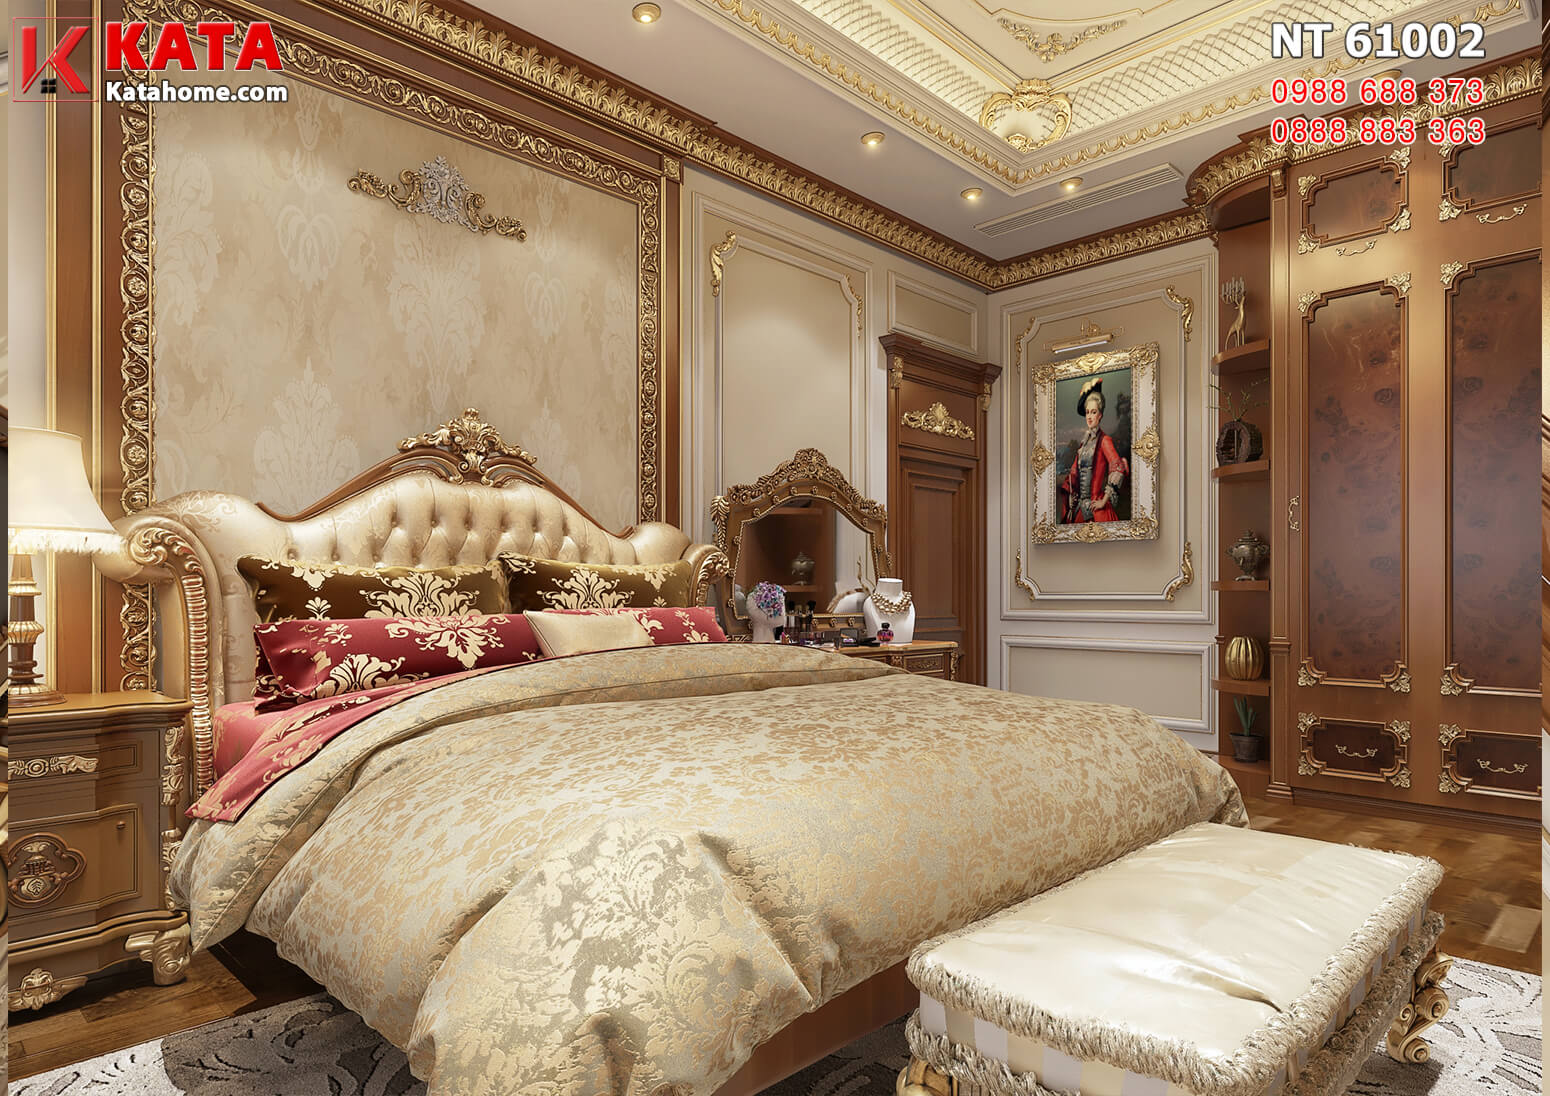 Hình ảnh: Chiếc giường King size được đặt ở chính giữa không gian phòng ngủ